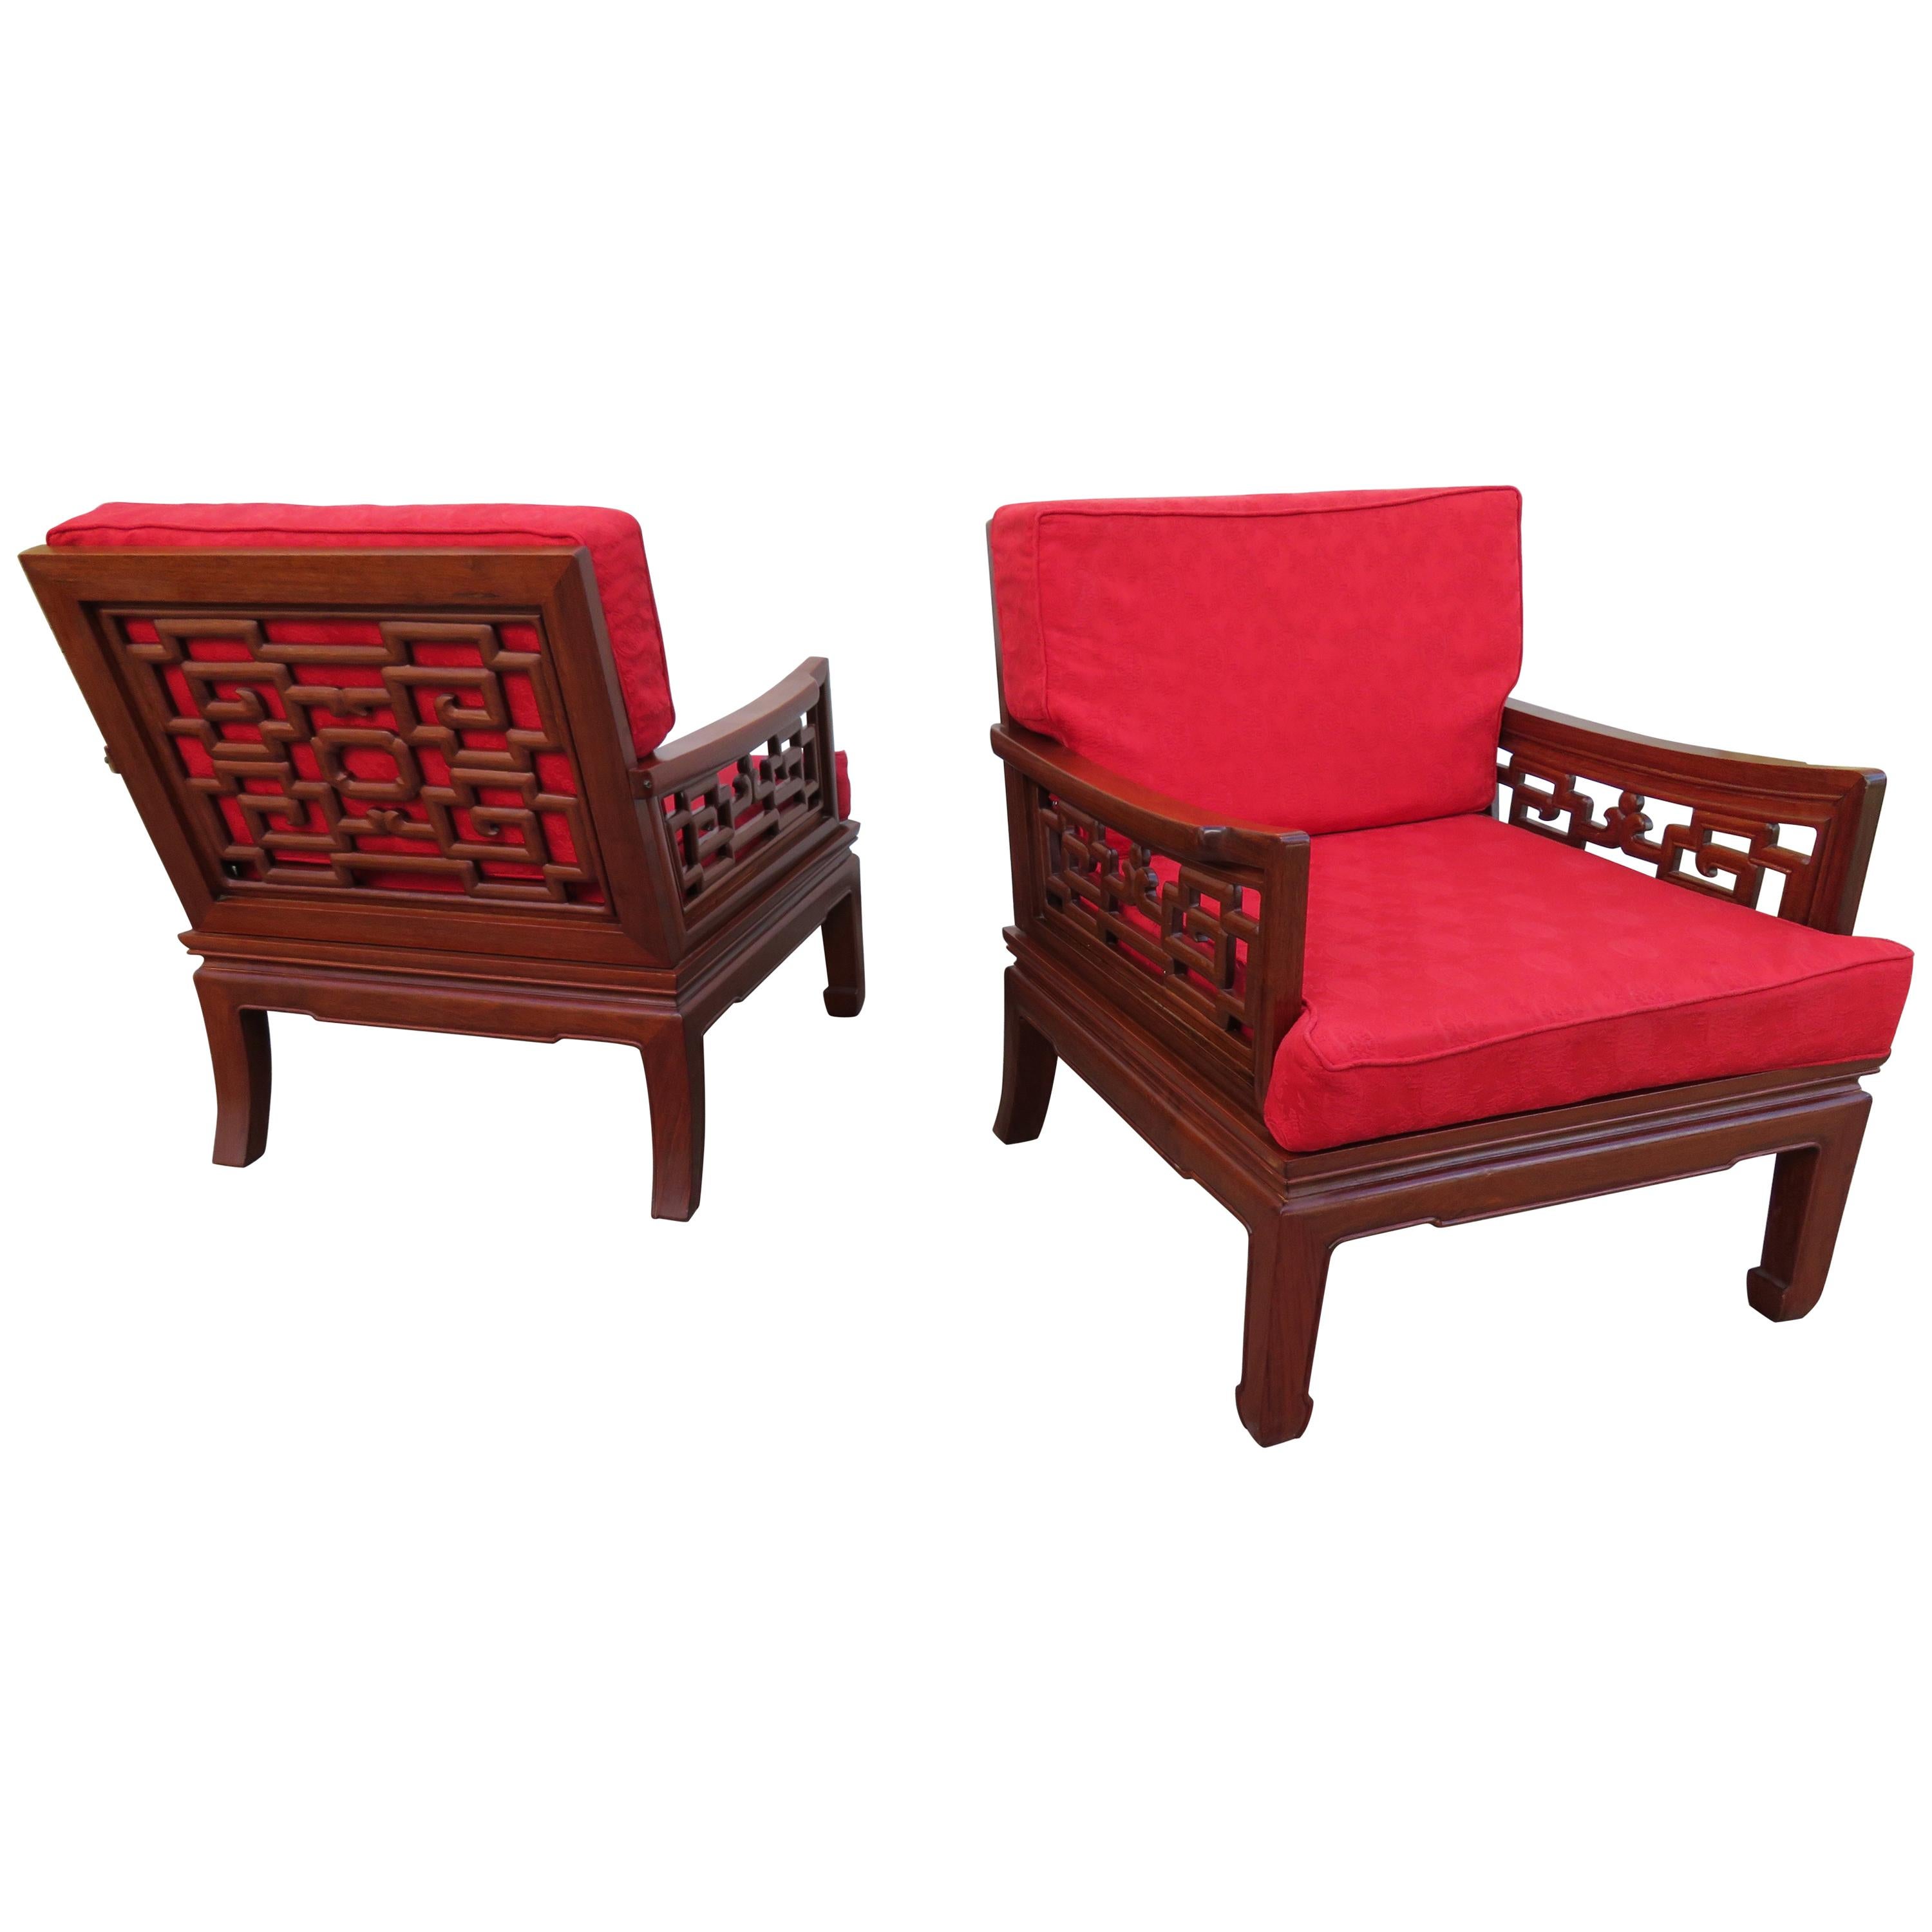 Magnifique paire de chaises en bois de rose sculpté de style chinoiseries Ming, modernes et asiatiques